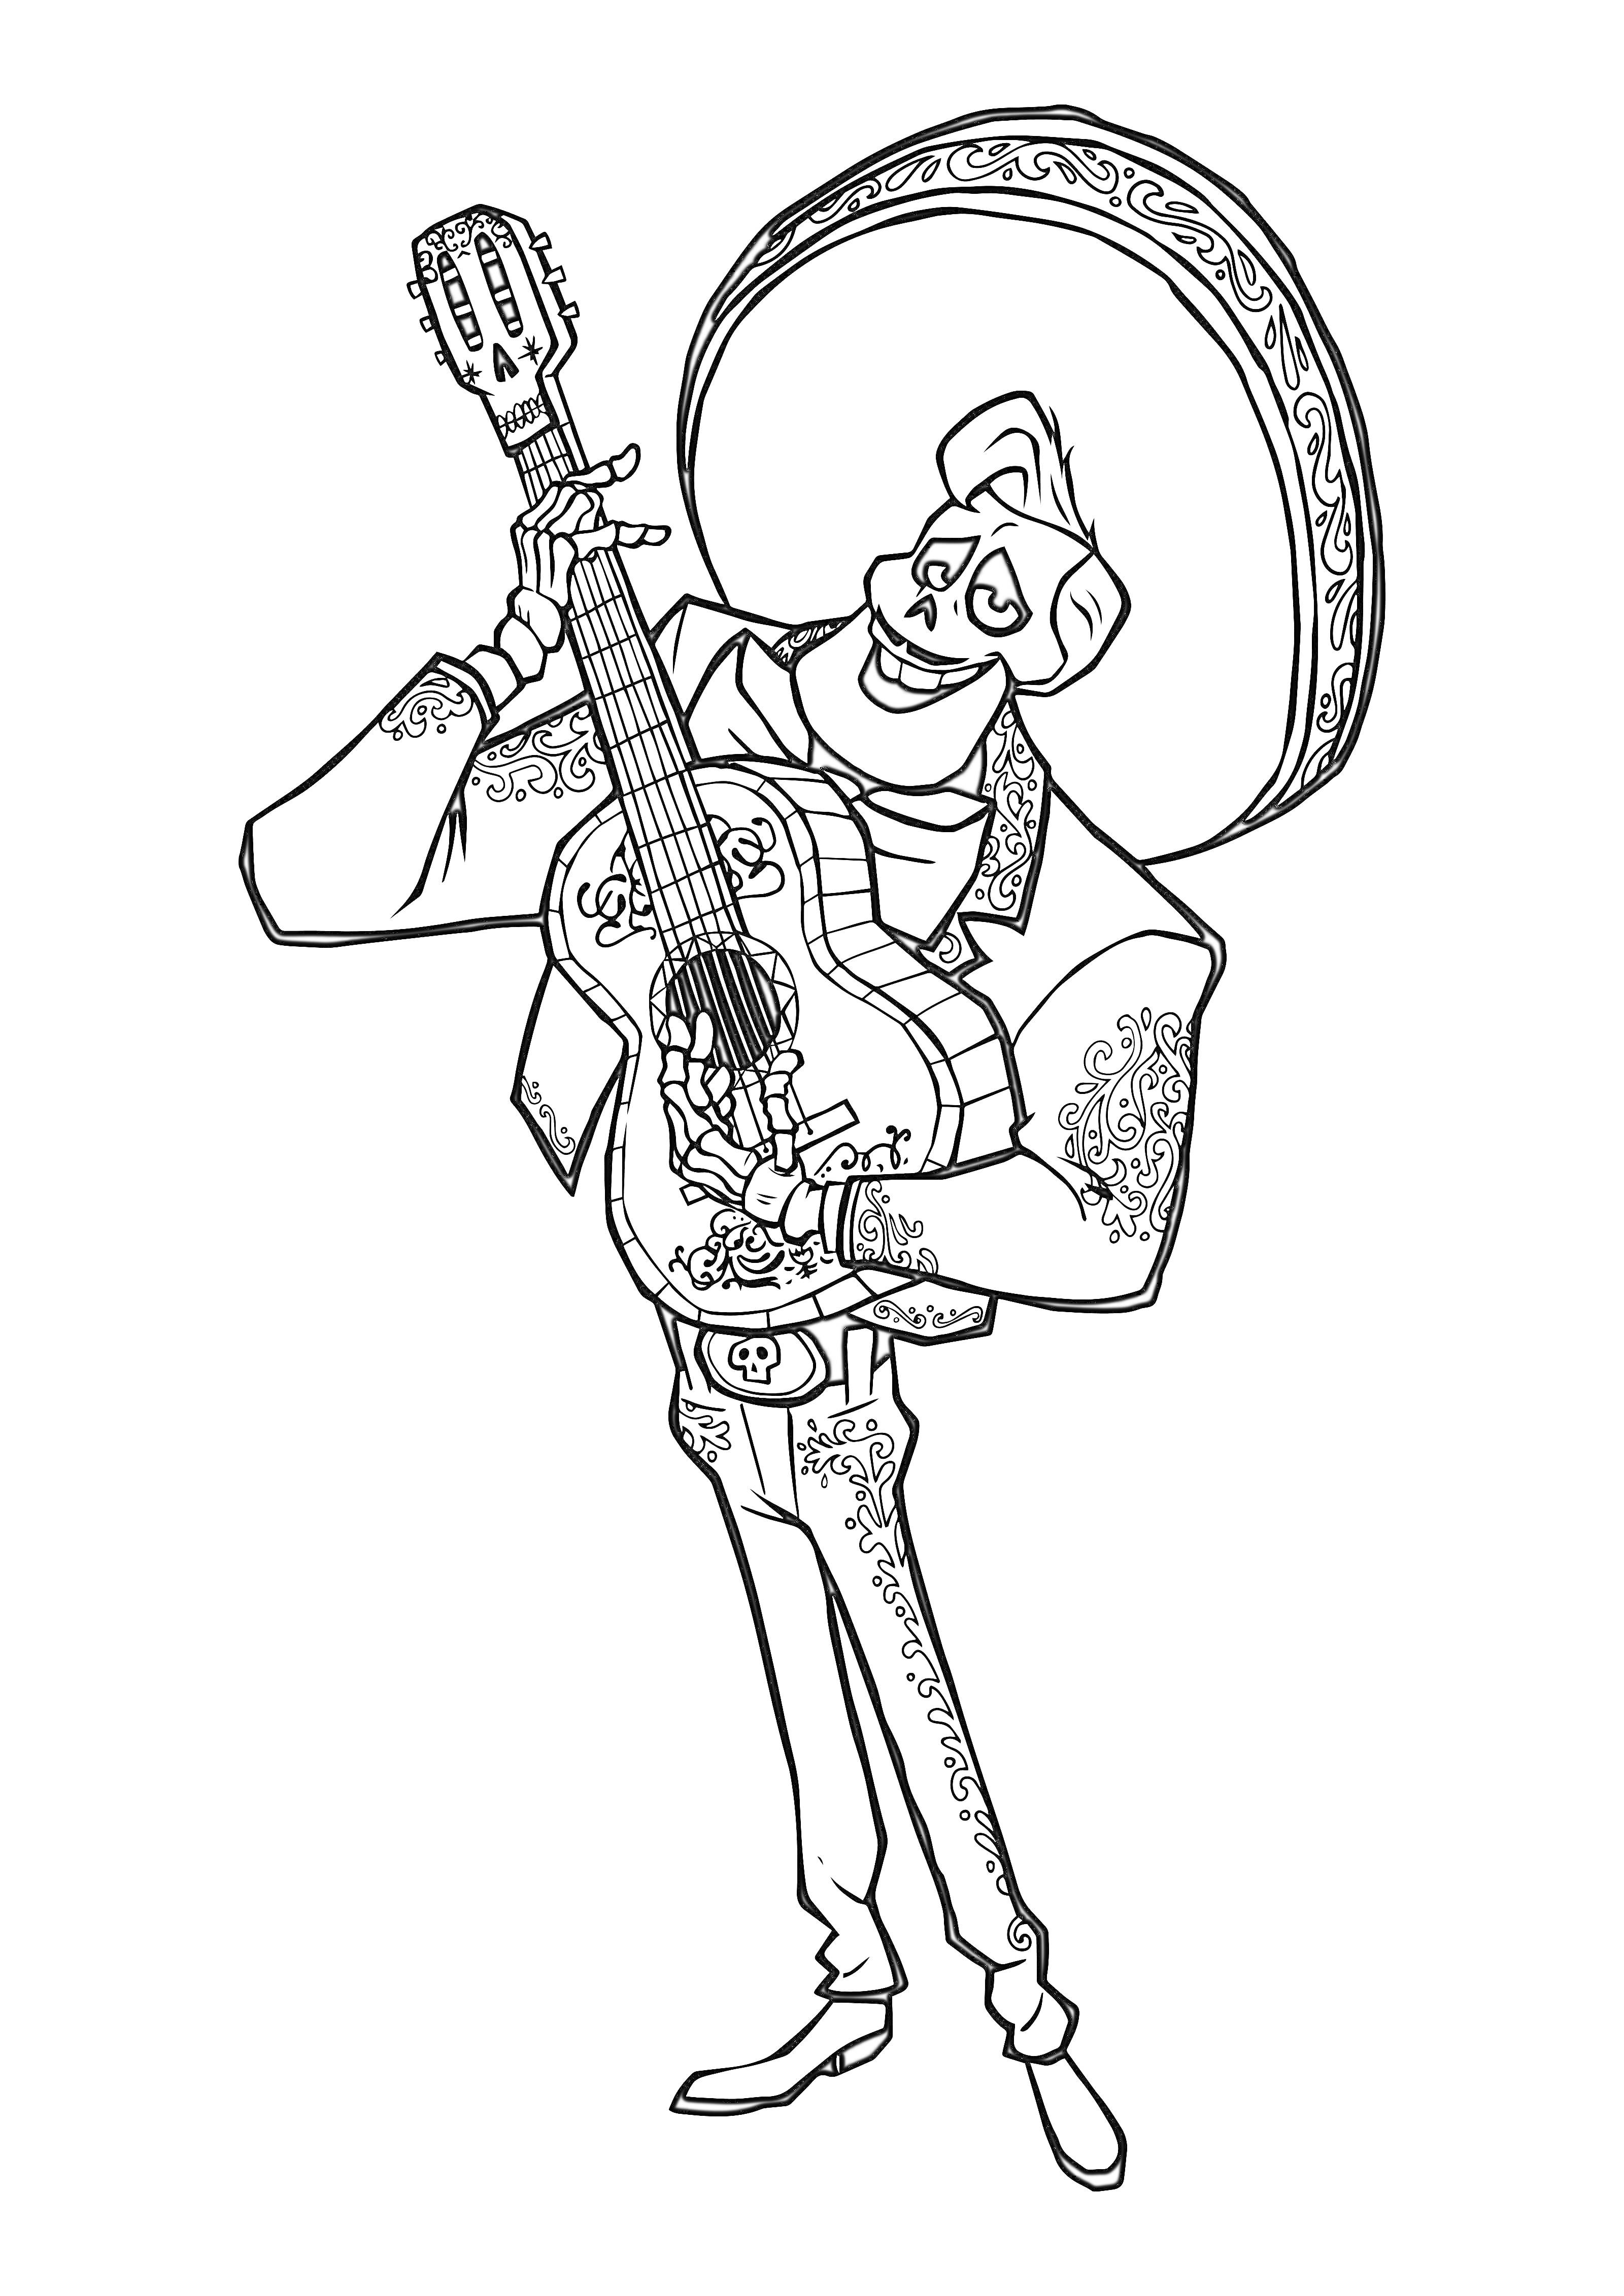 Раскраска Скелет в сомбреро играет на гитаре